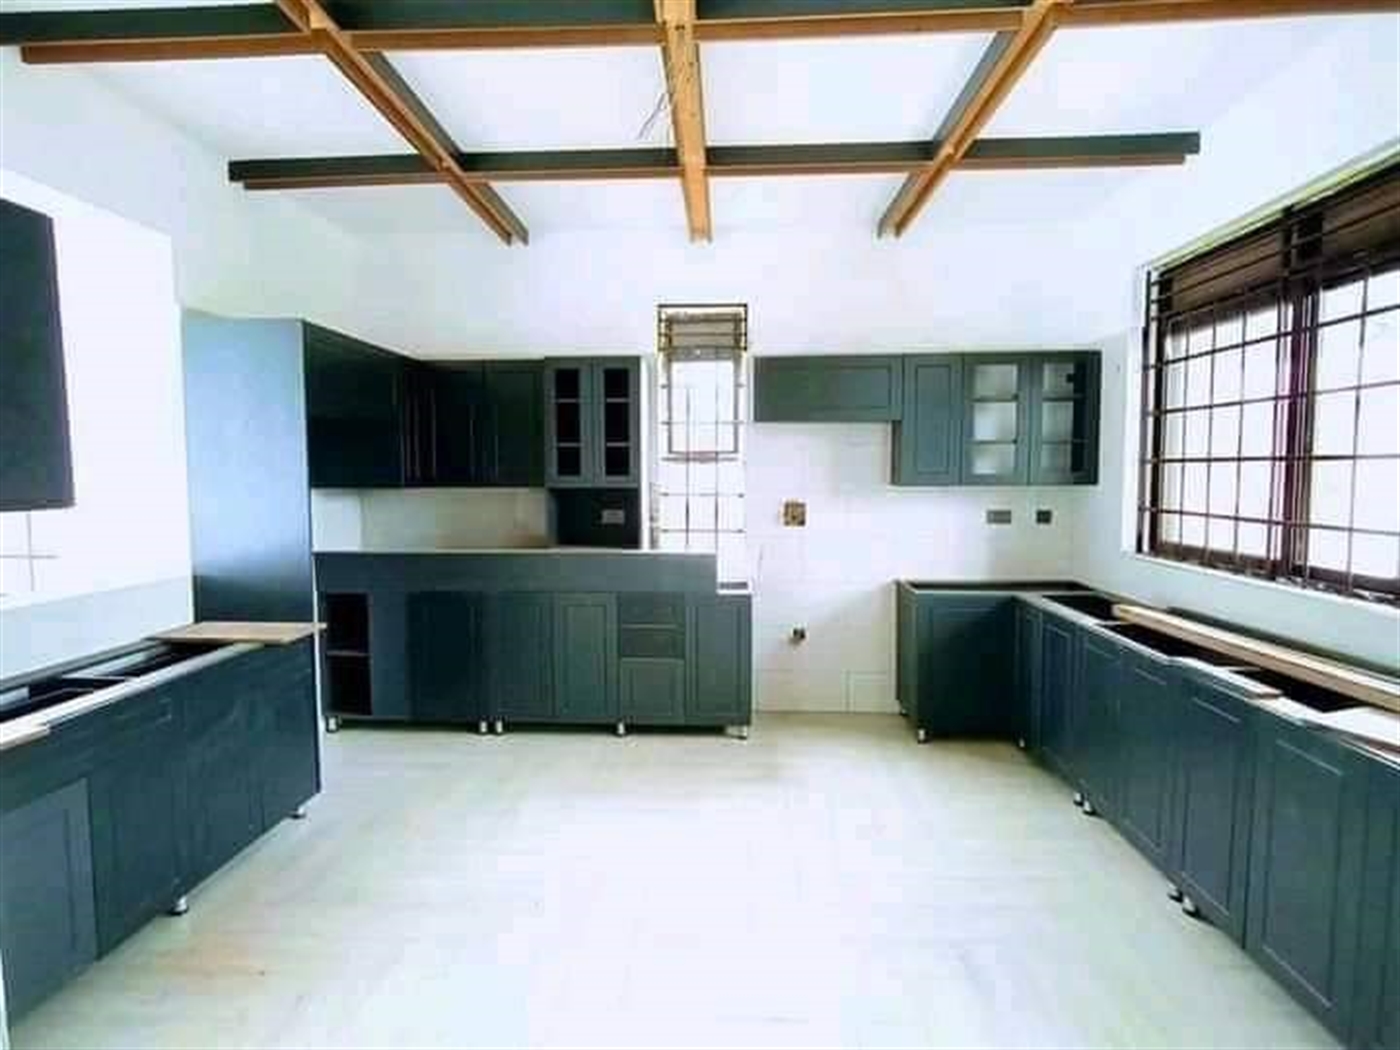 Mansion for sale in Kyaliwajjala Wakiso